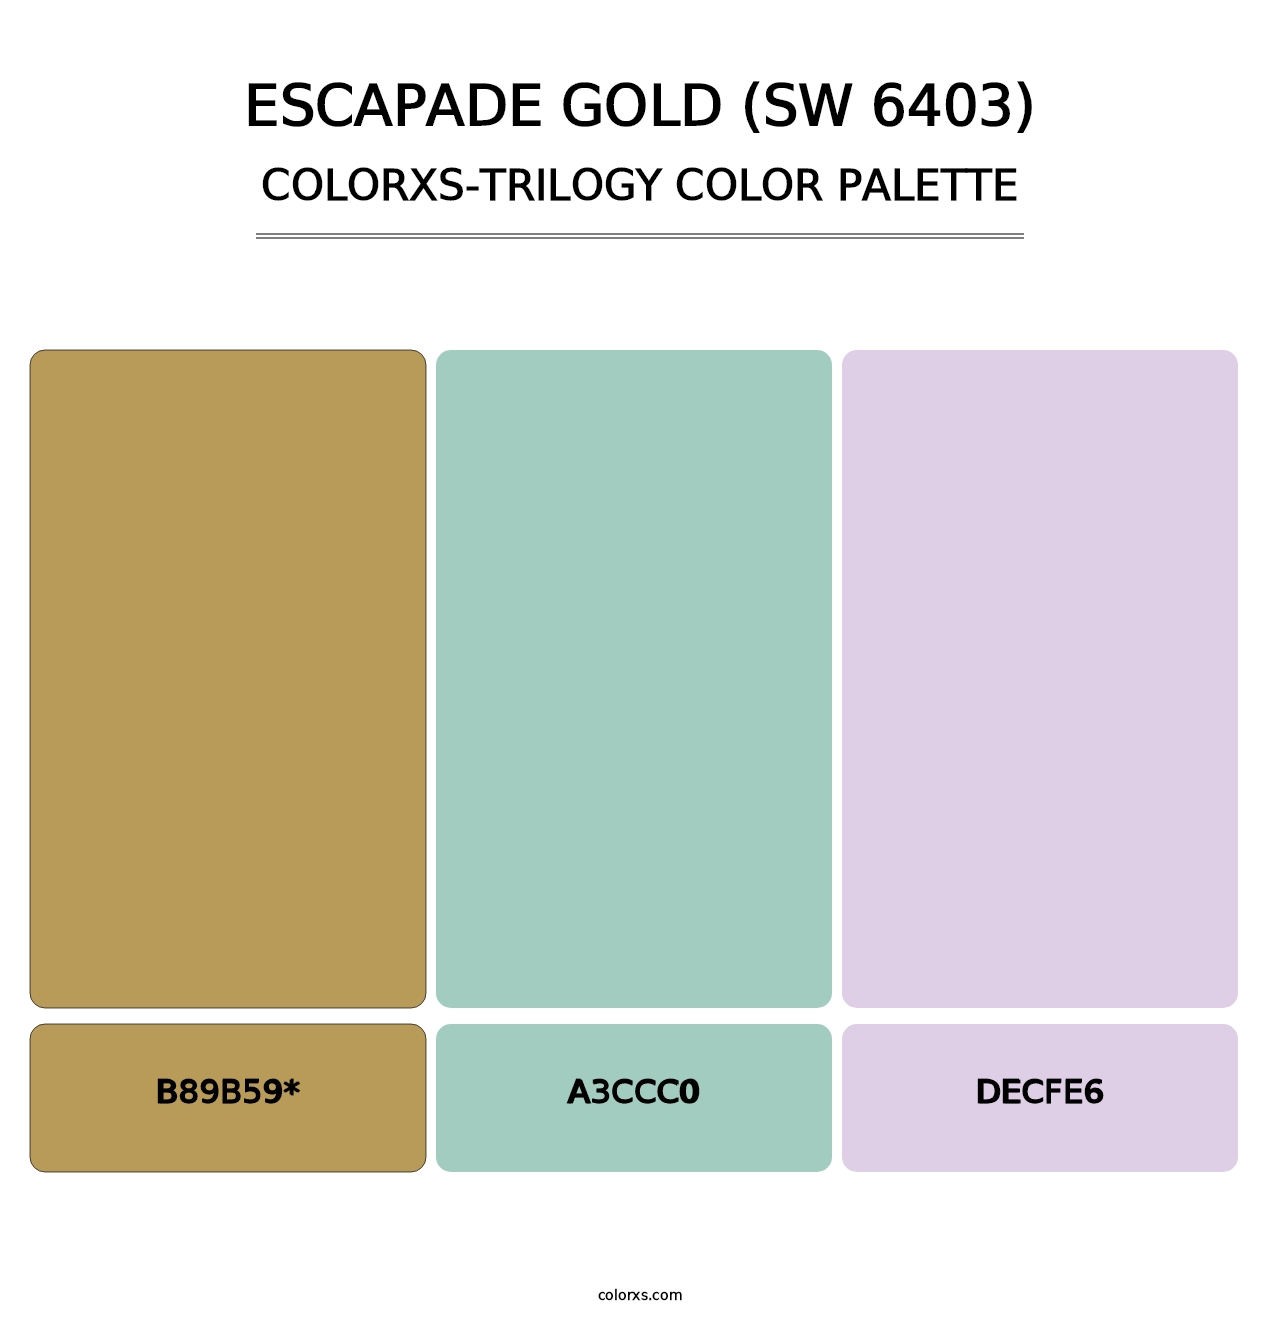 Escapade Gold (SW 6403) - Colorxs Trilogy Palette